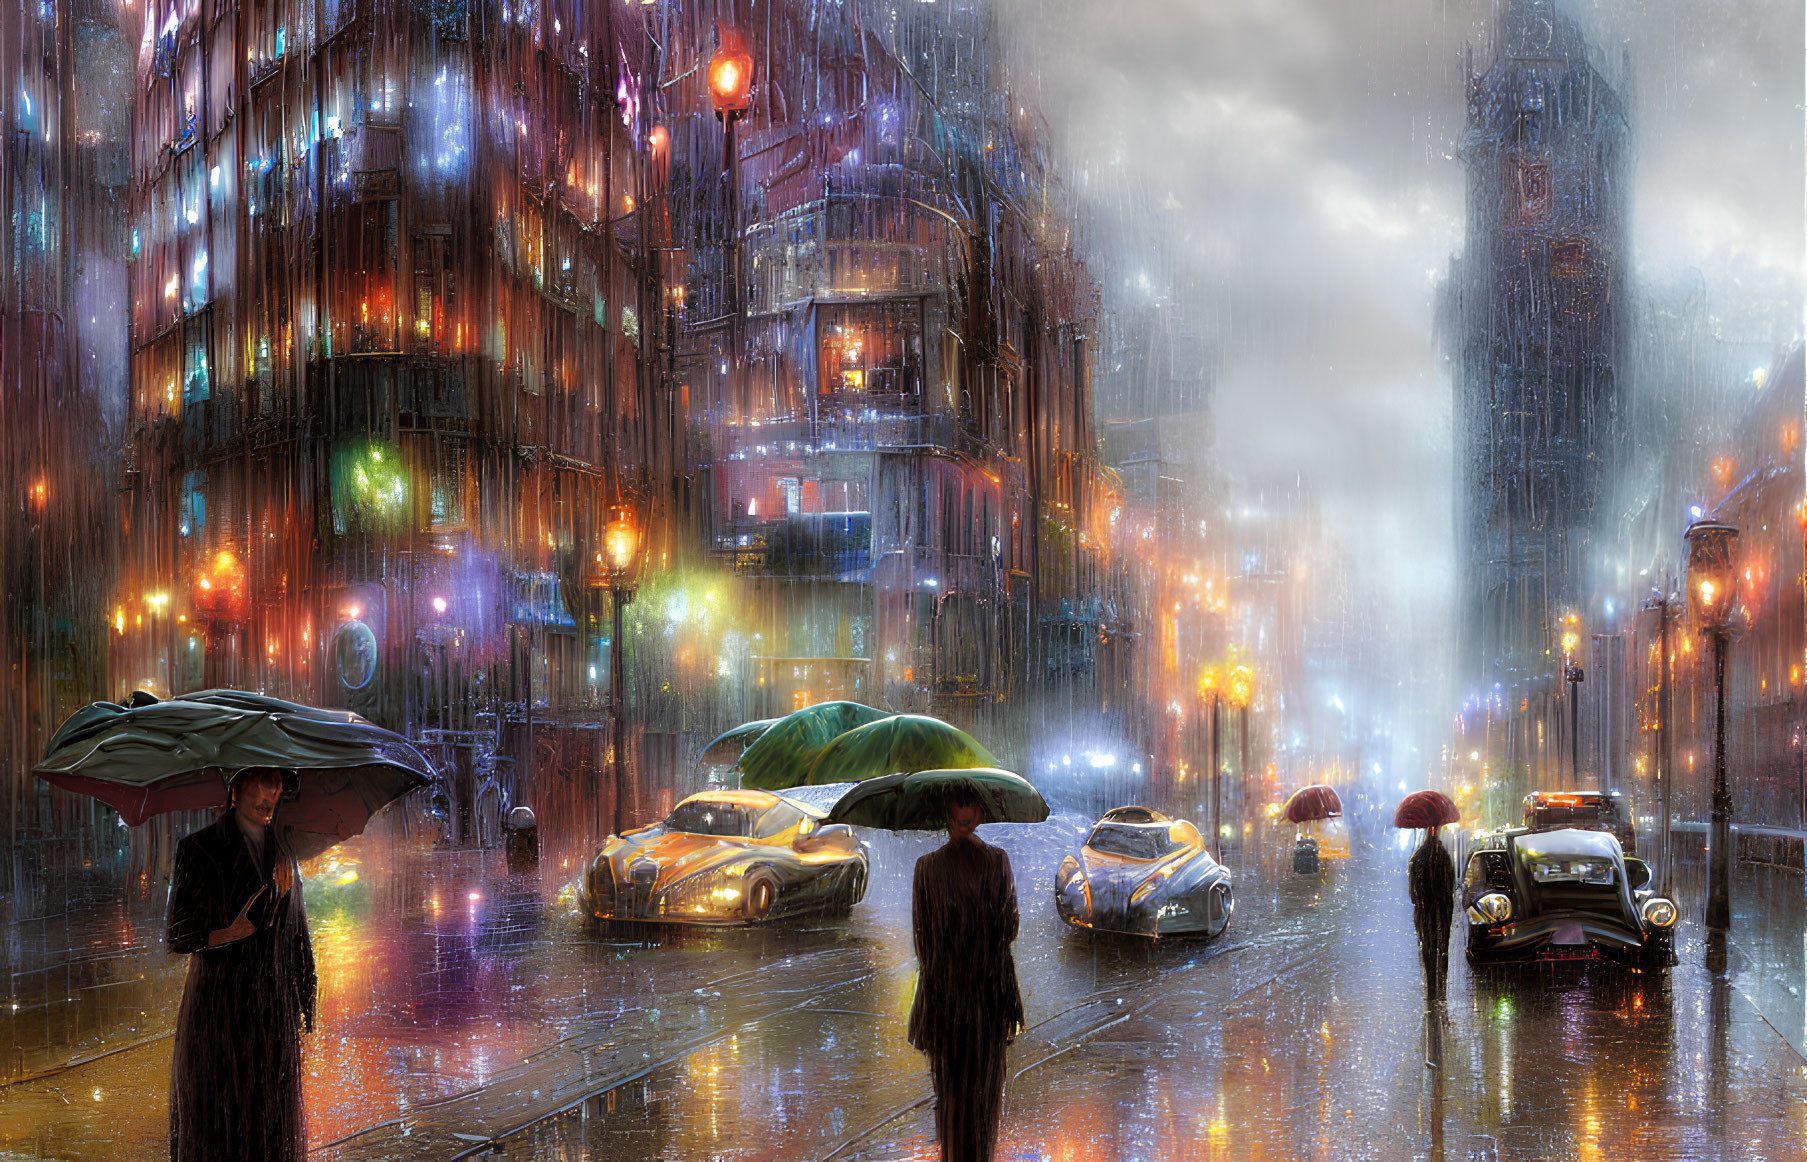 Futuristic city streetscape in rain with neon signs & umbrellas